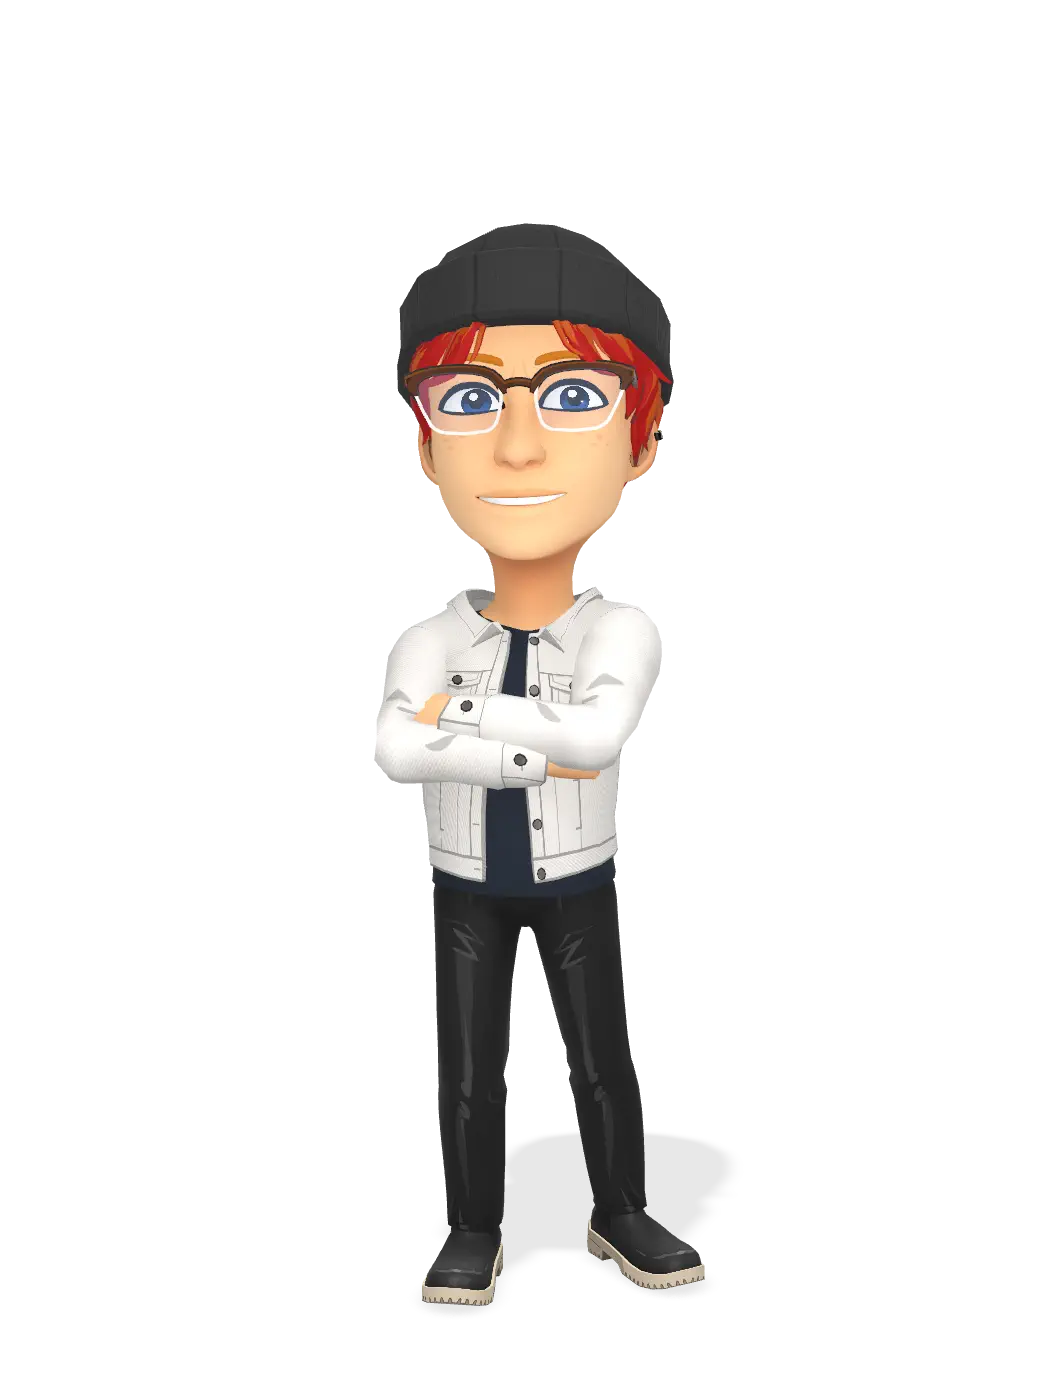 3D Bitmoji for elliotthorogood avatar